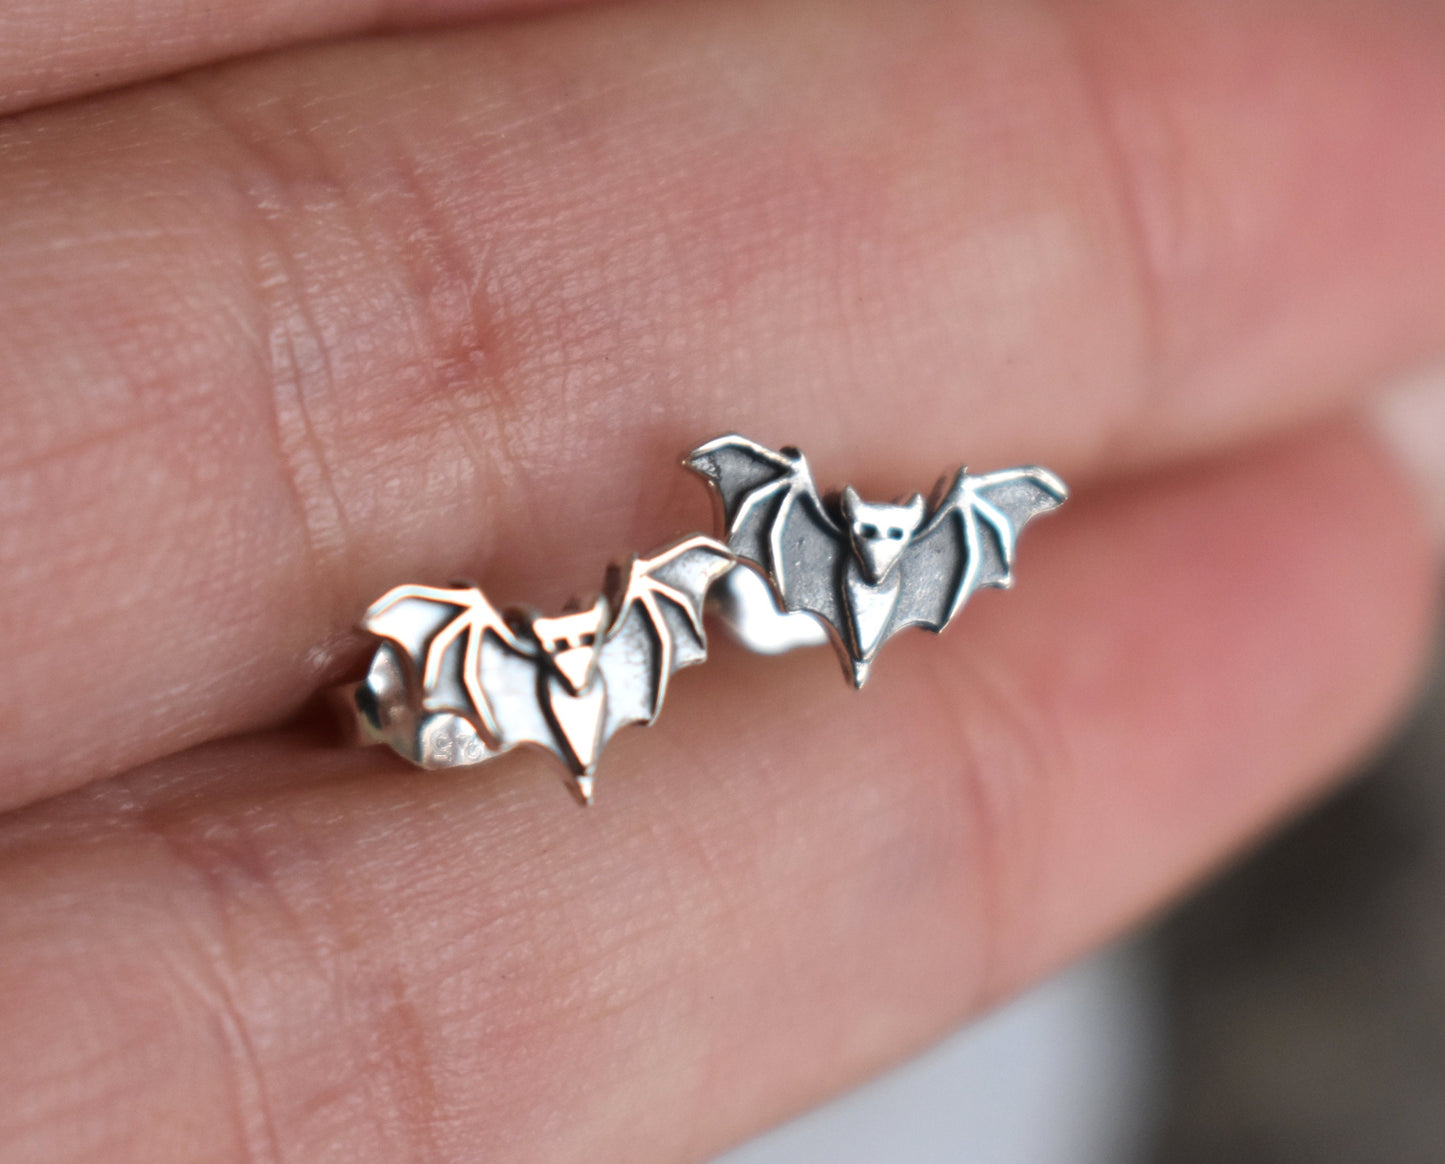 Bat Earrings- Bat Stud Earrings, Bat Jewelry, Halloween Earrings-Witchy Jewlery